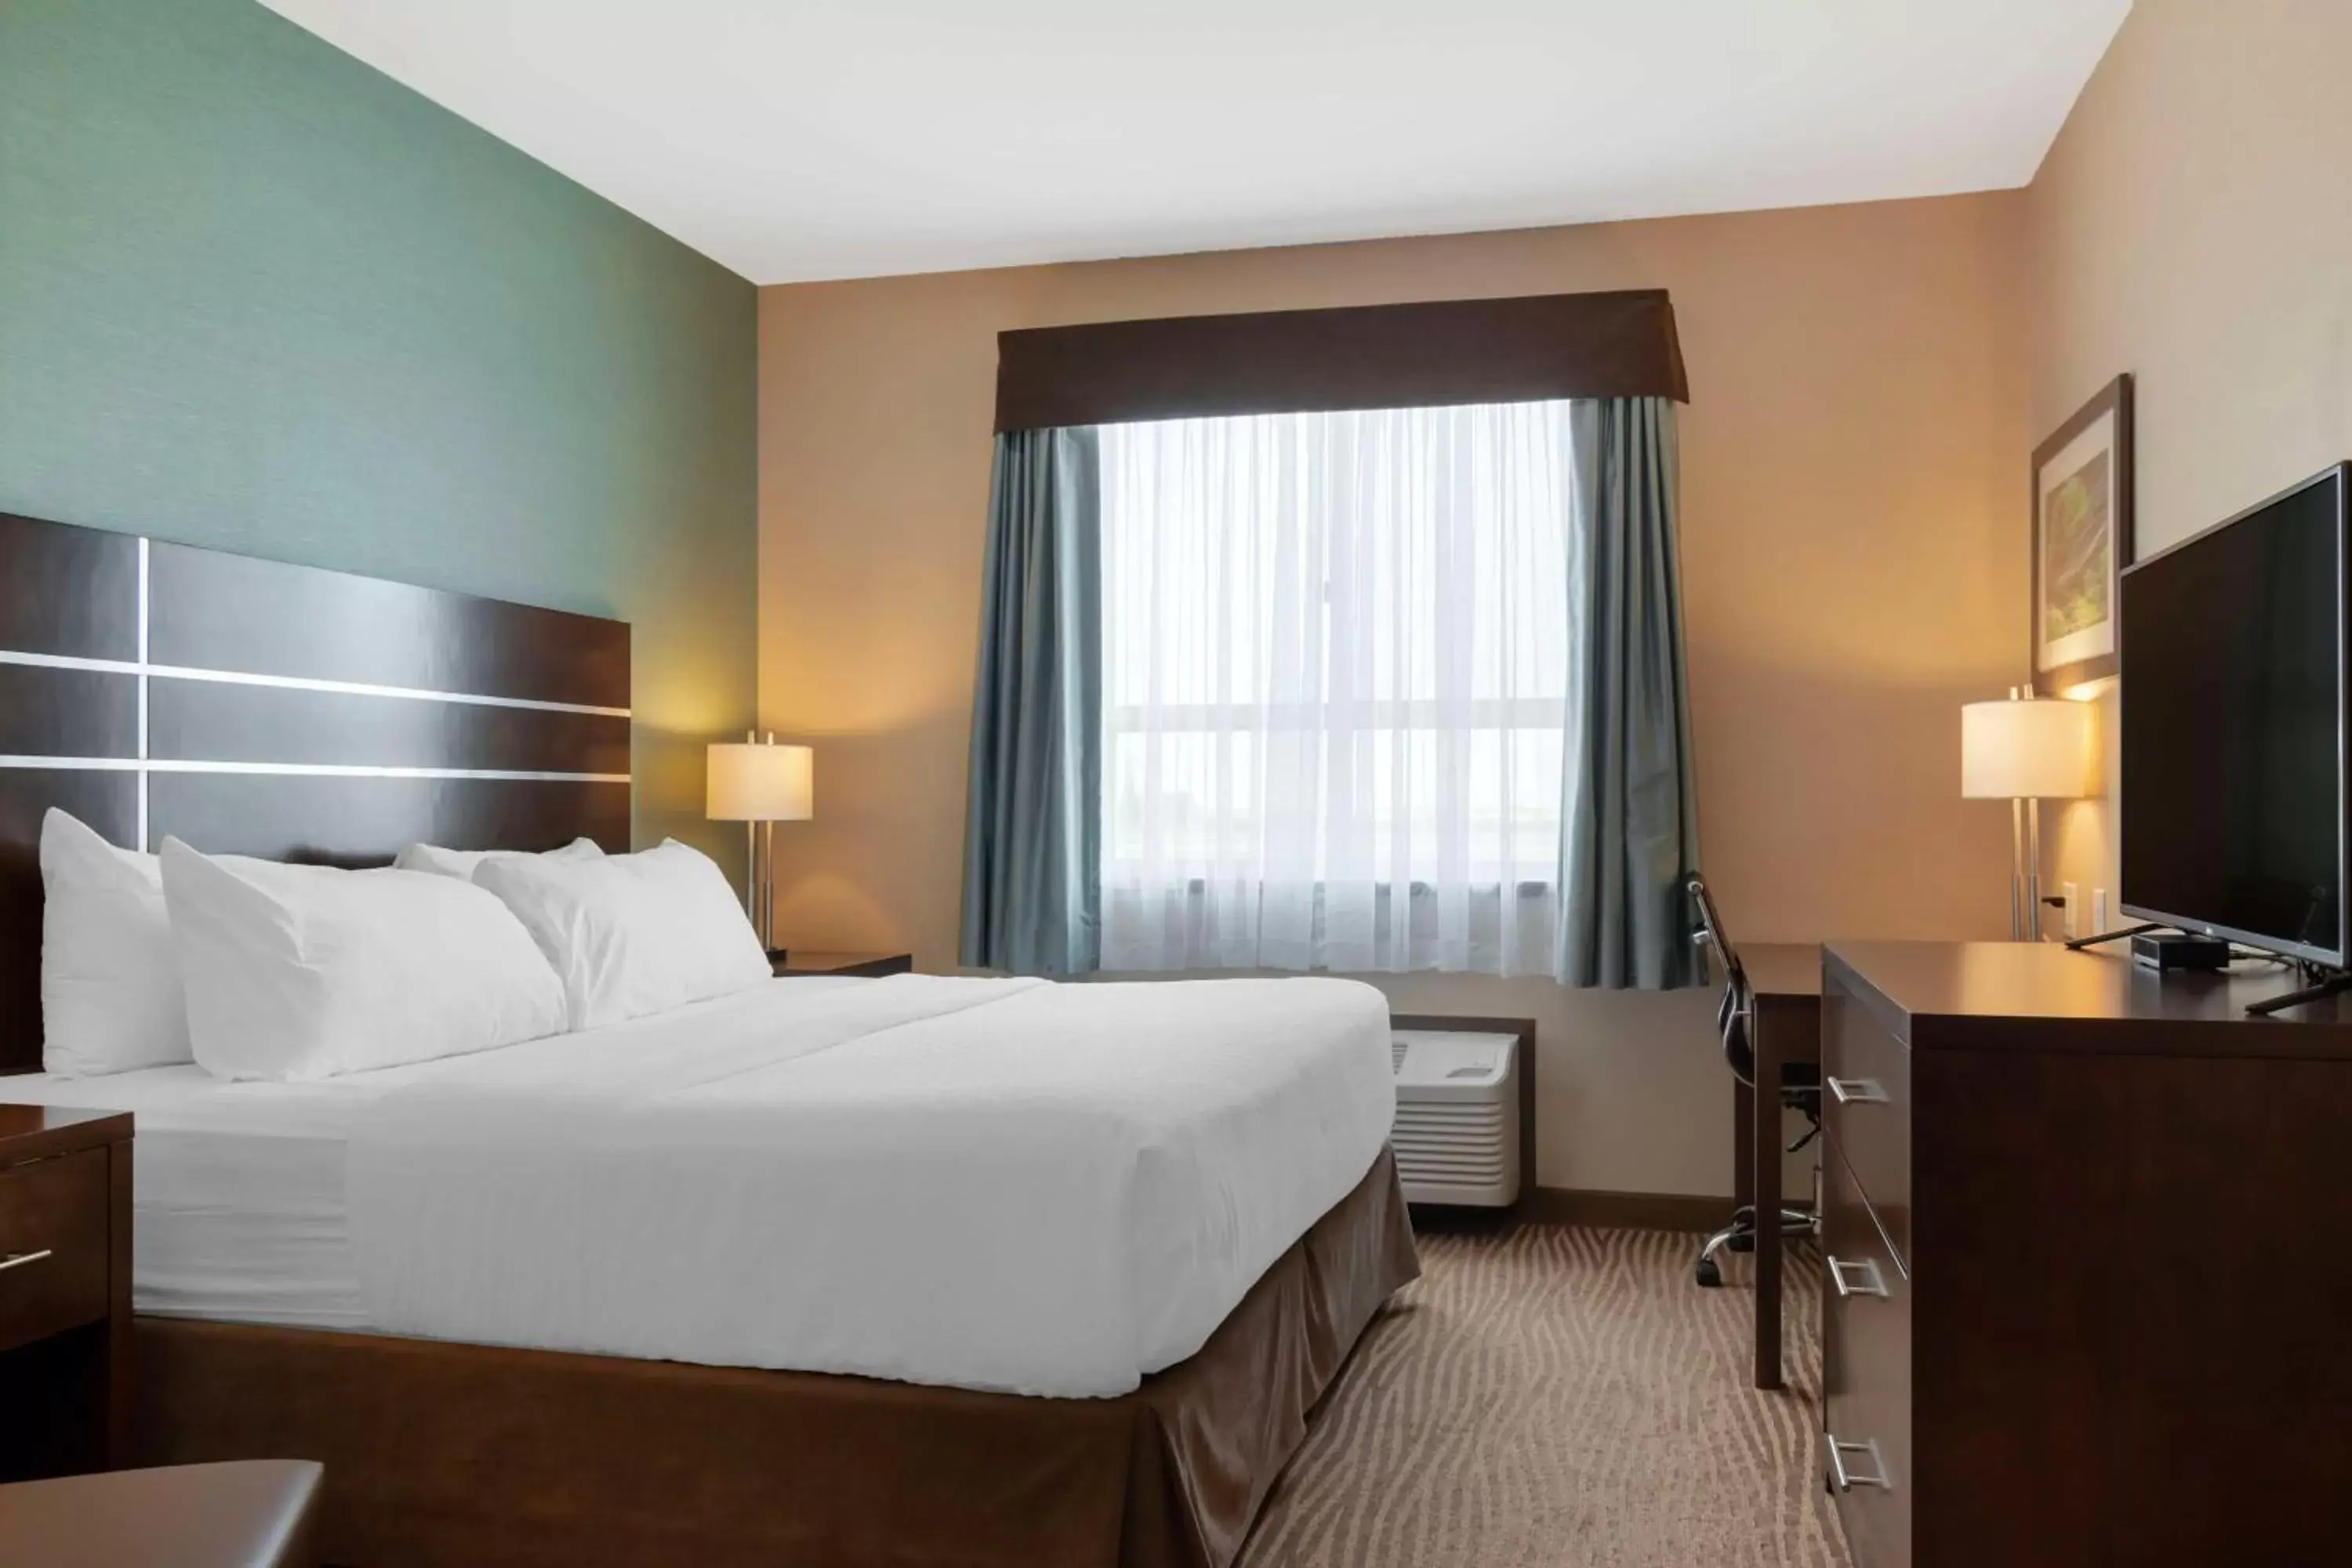 Bedroom, Bed in Best Western Plus Moosomin Hotel